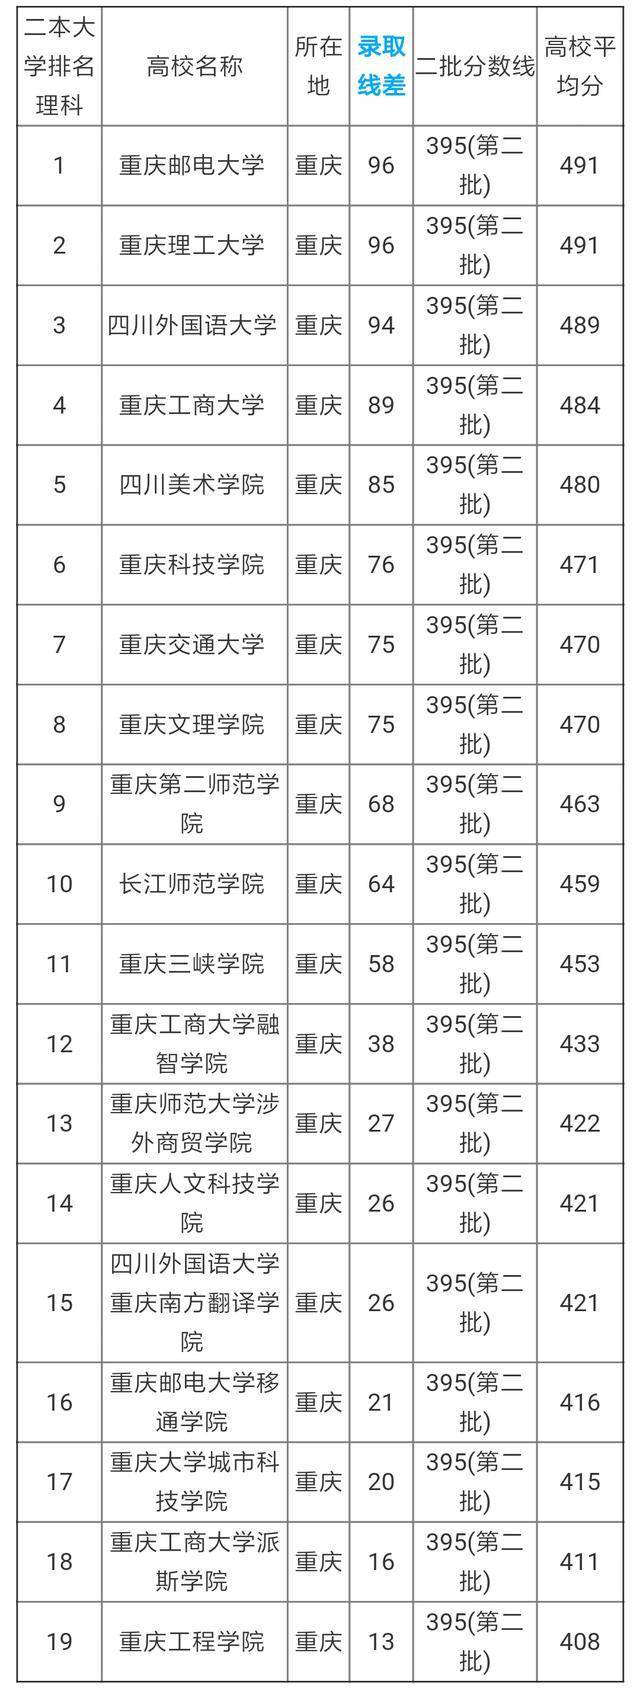 重庆市共19所二本批次招生的大学参与了2017-2018重庆二本大学排名